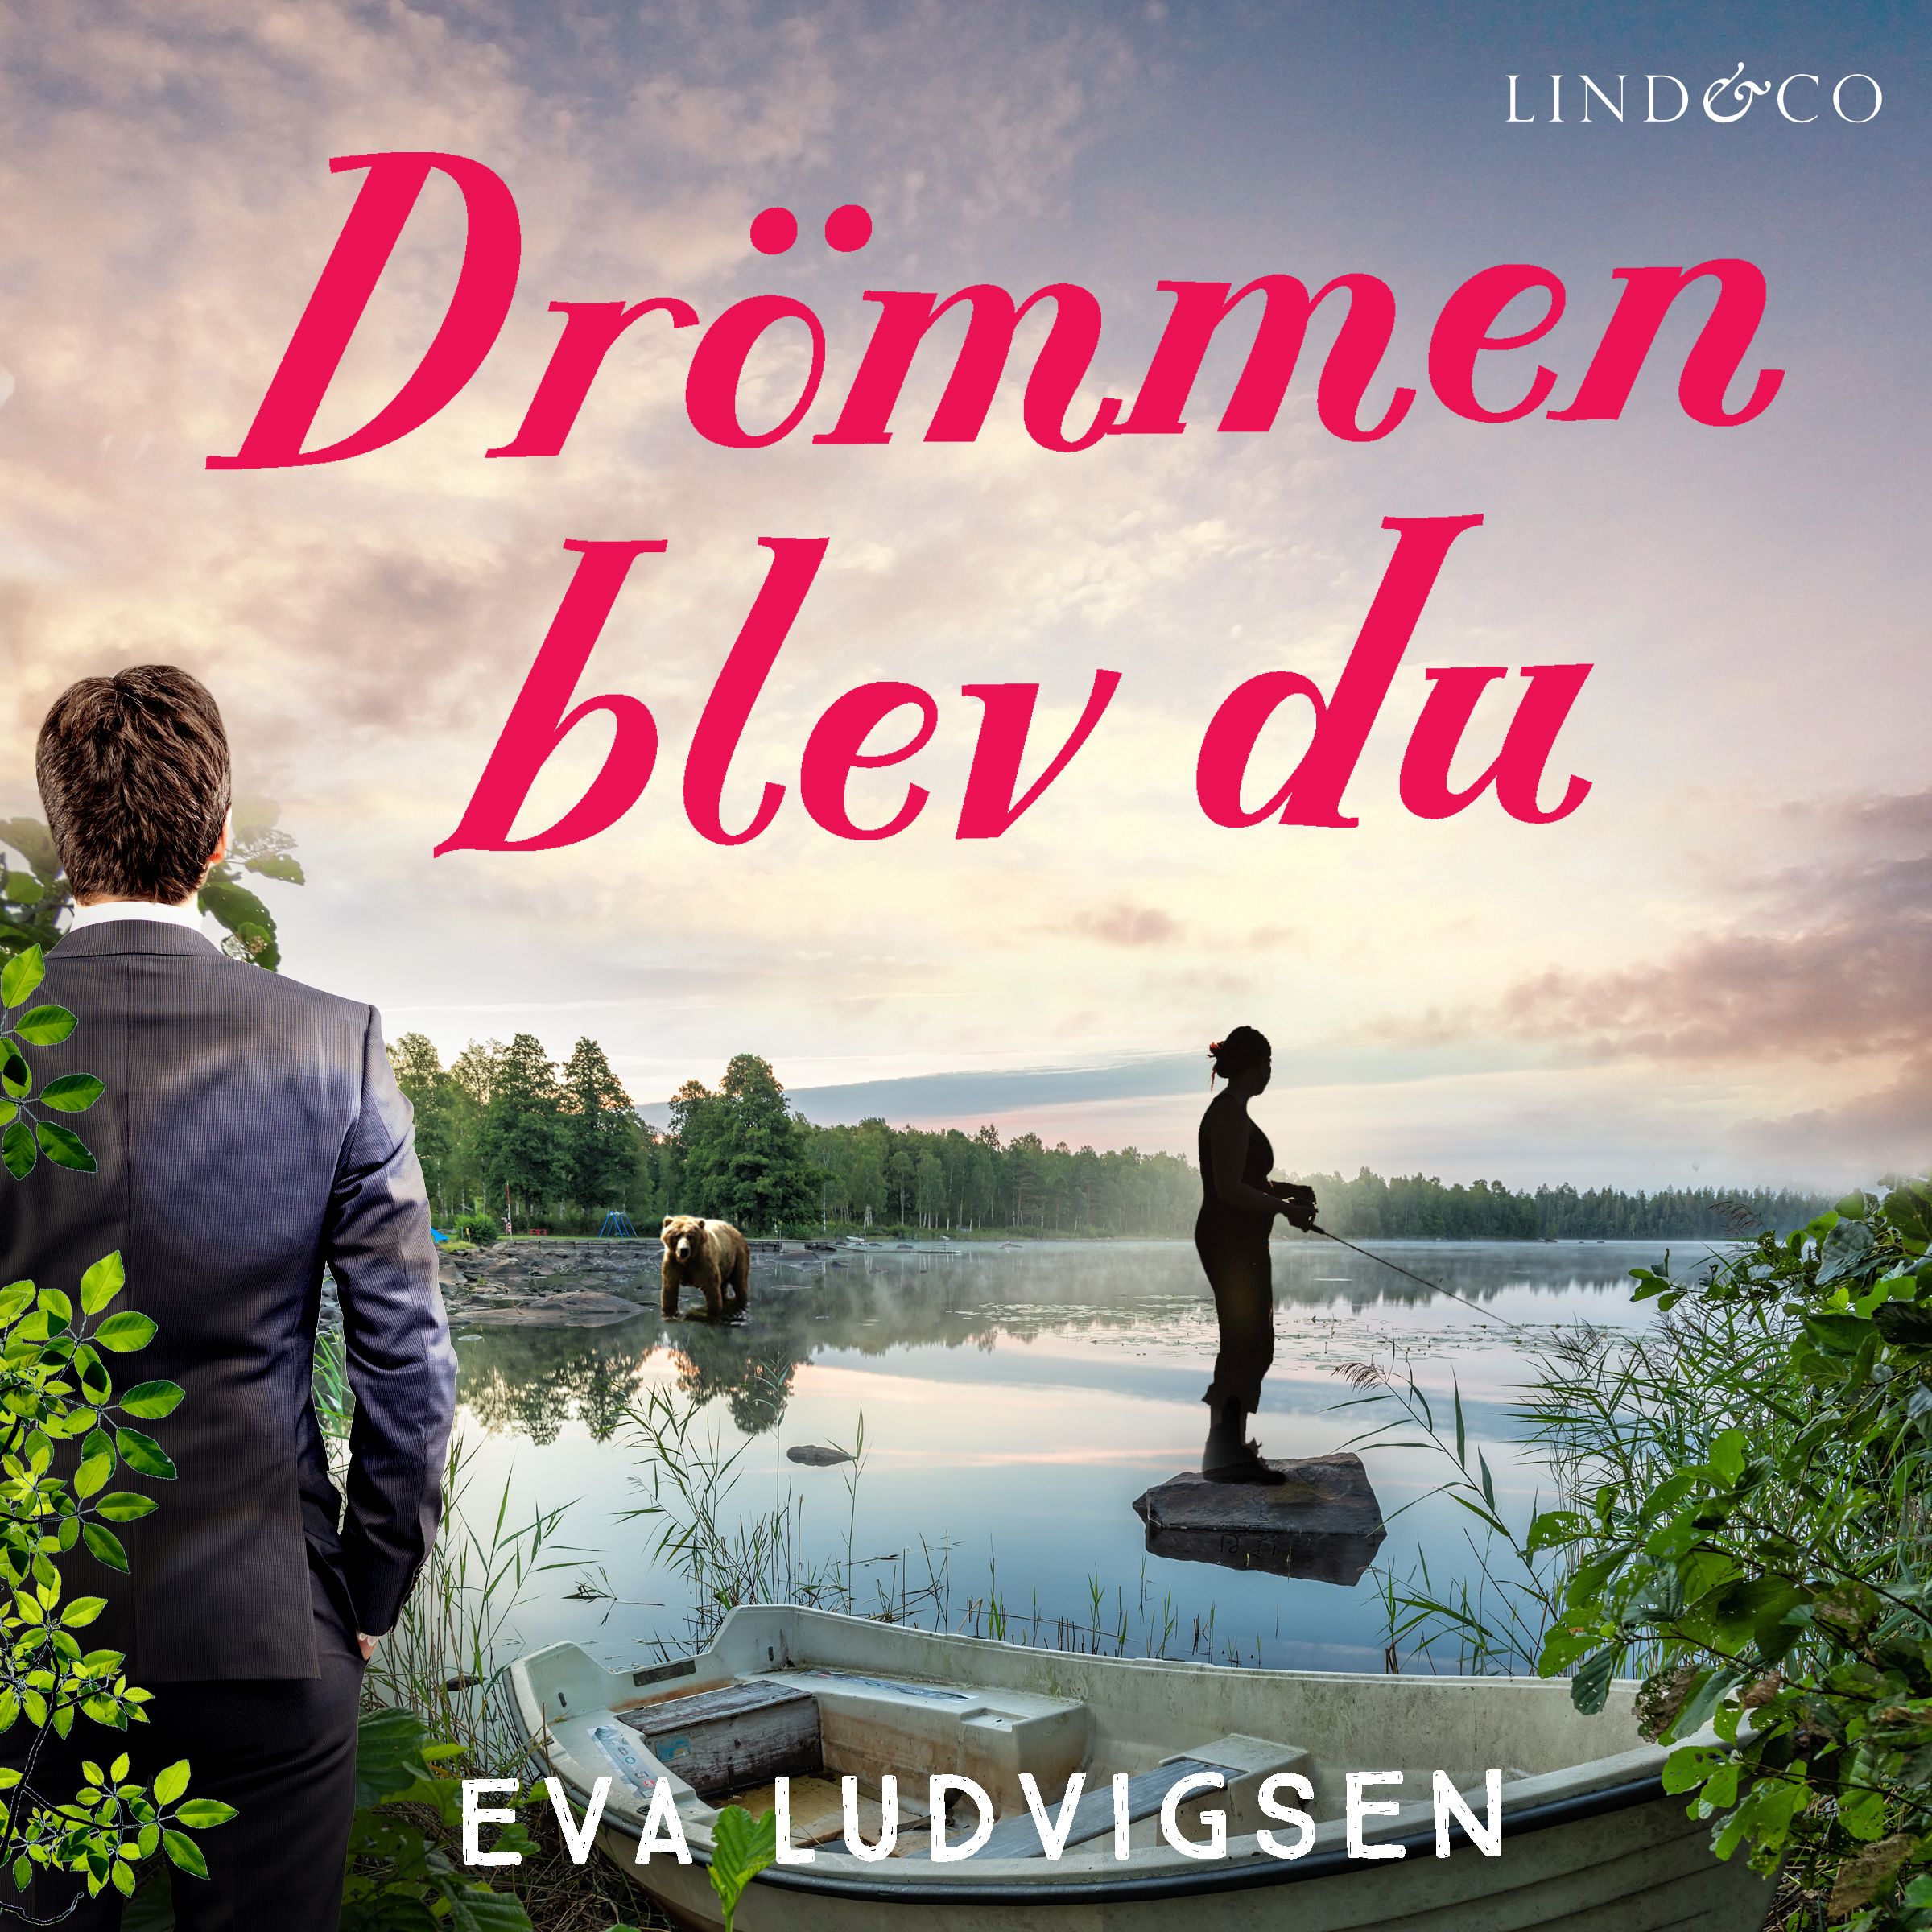 Drömmen blev du, ljudbok av Eva Ludvigsen